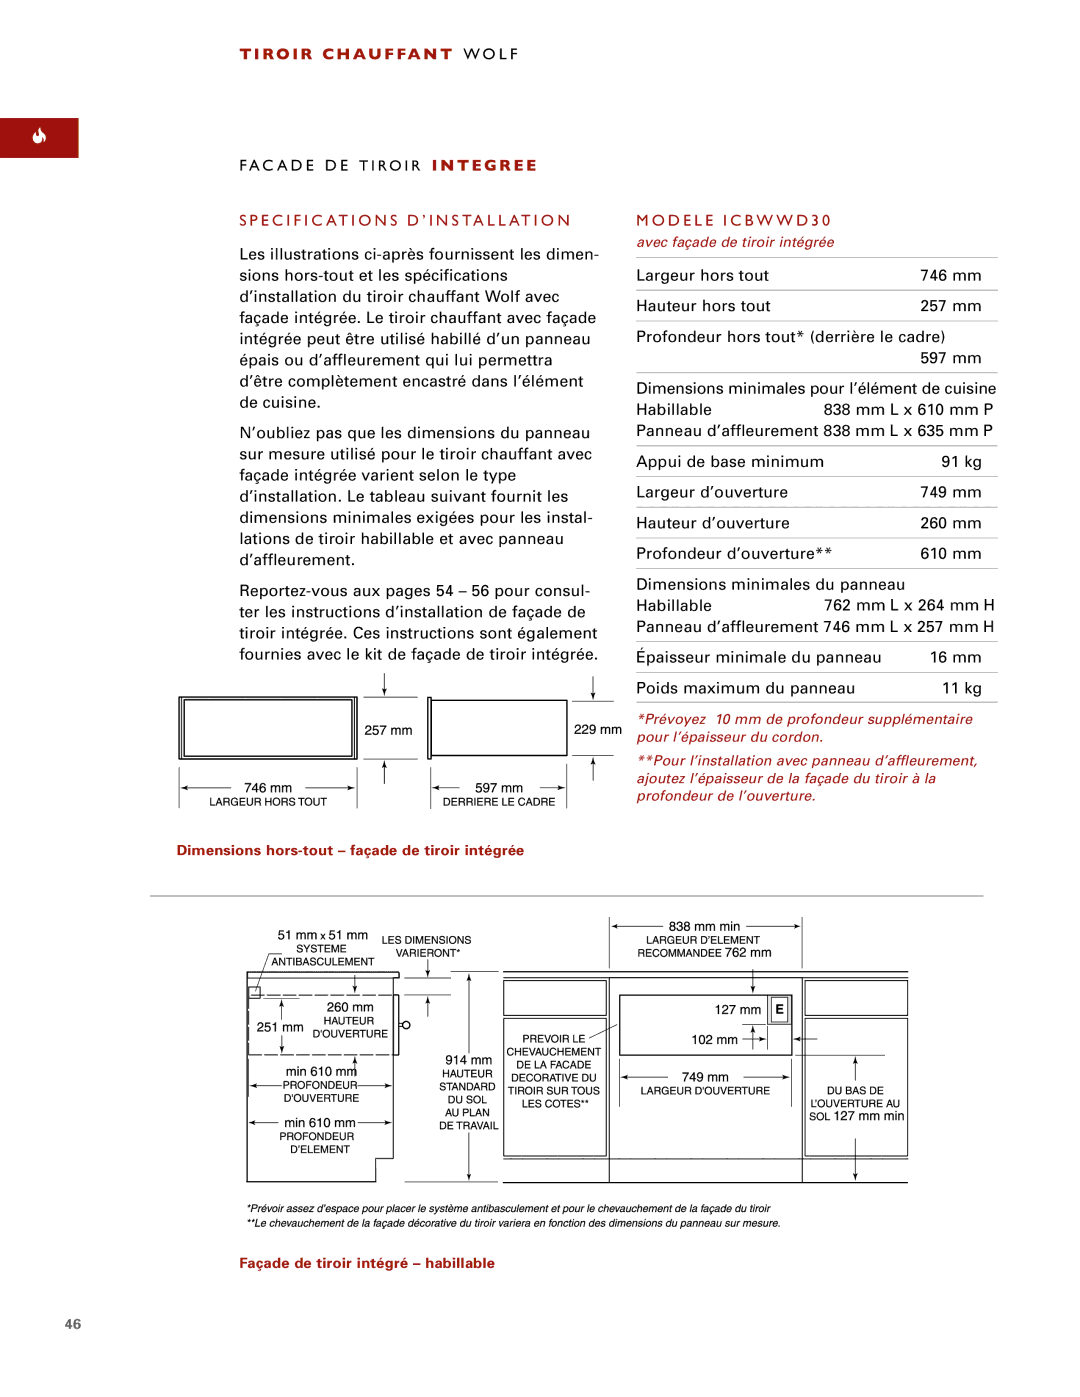 Wolf ICBWWD30 installation instructions Dimensions hors-tout façade de tiroir intégrée 